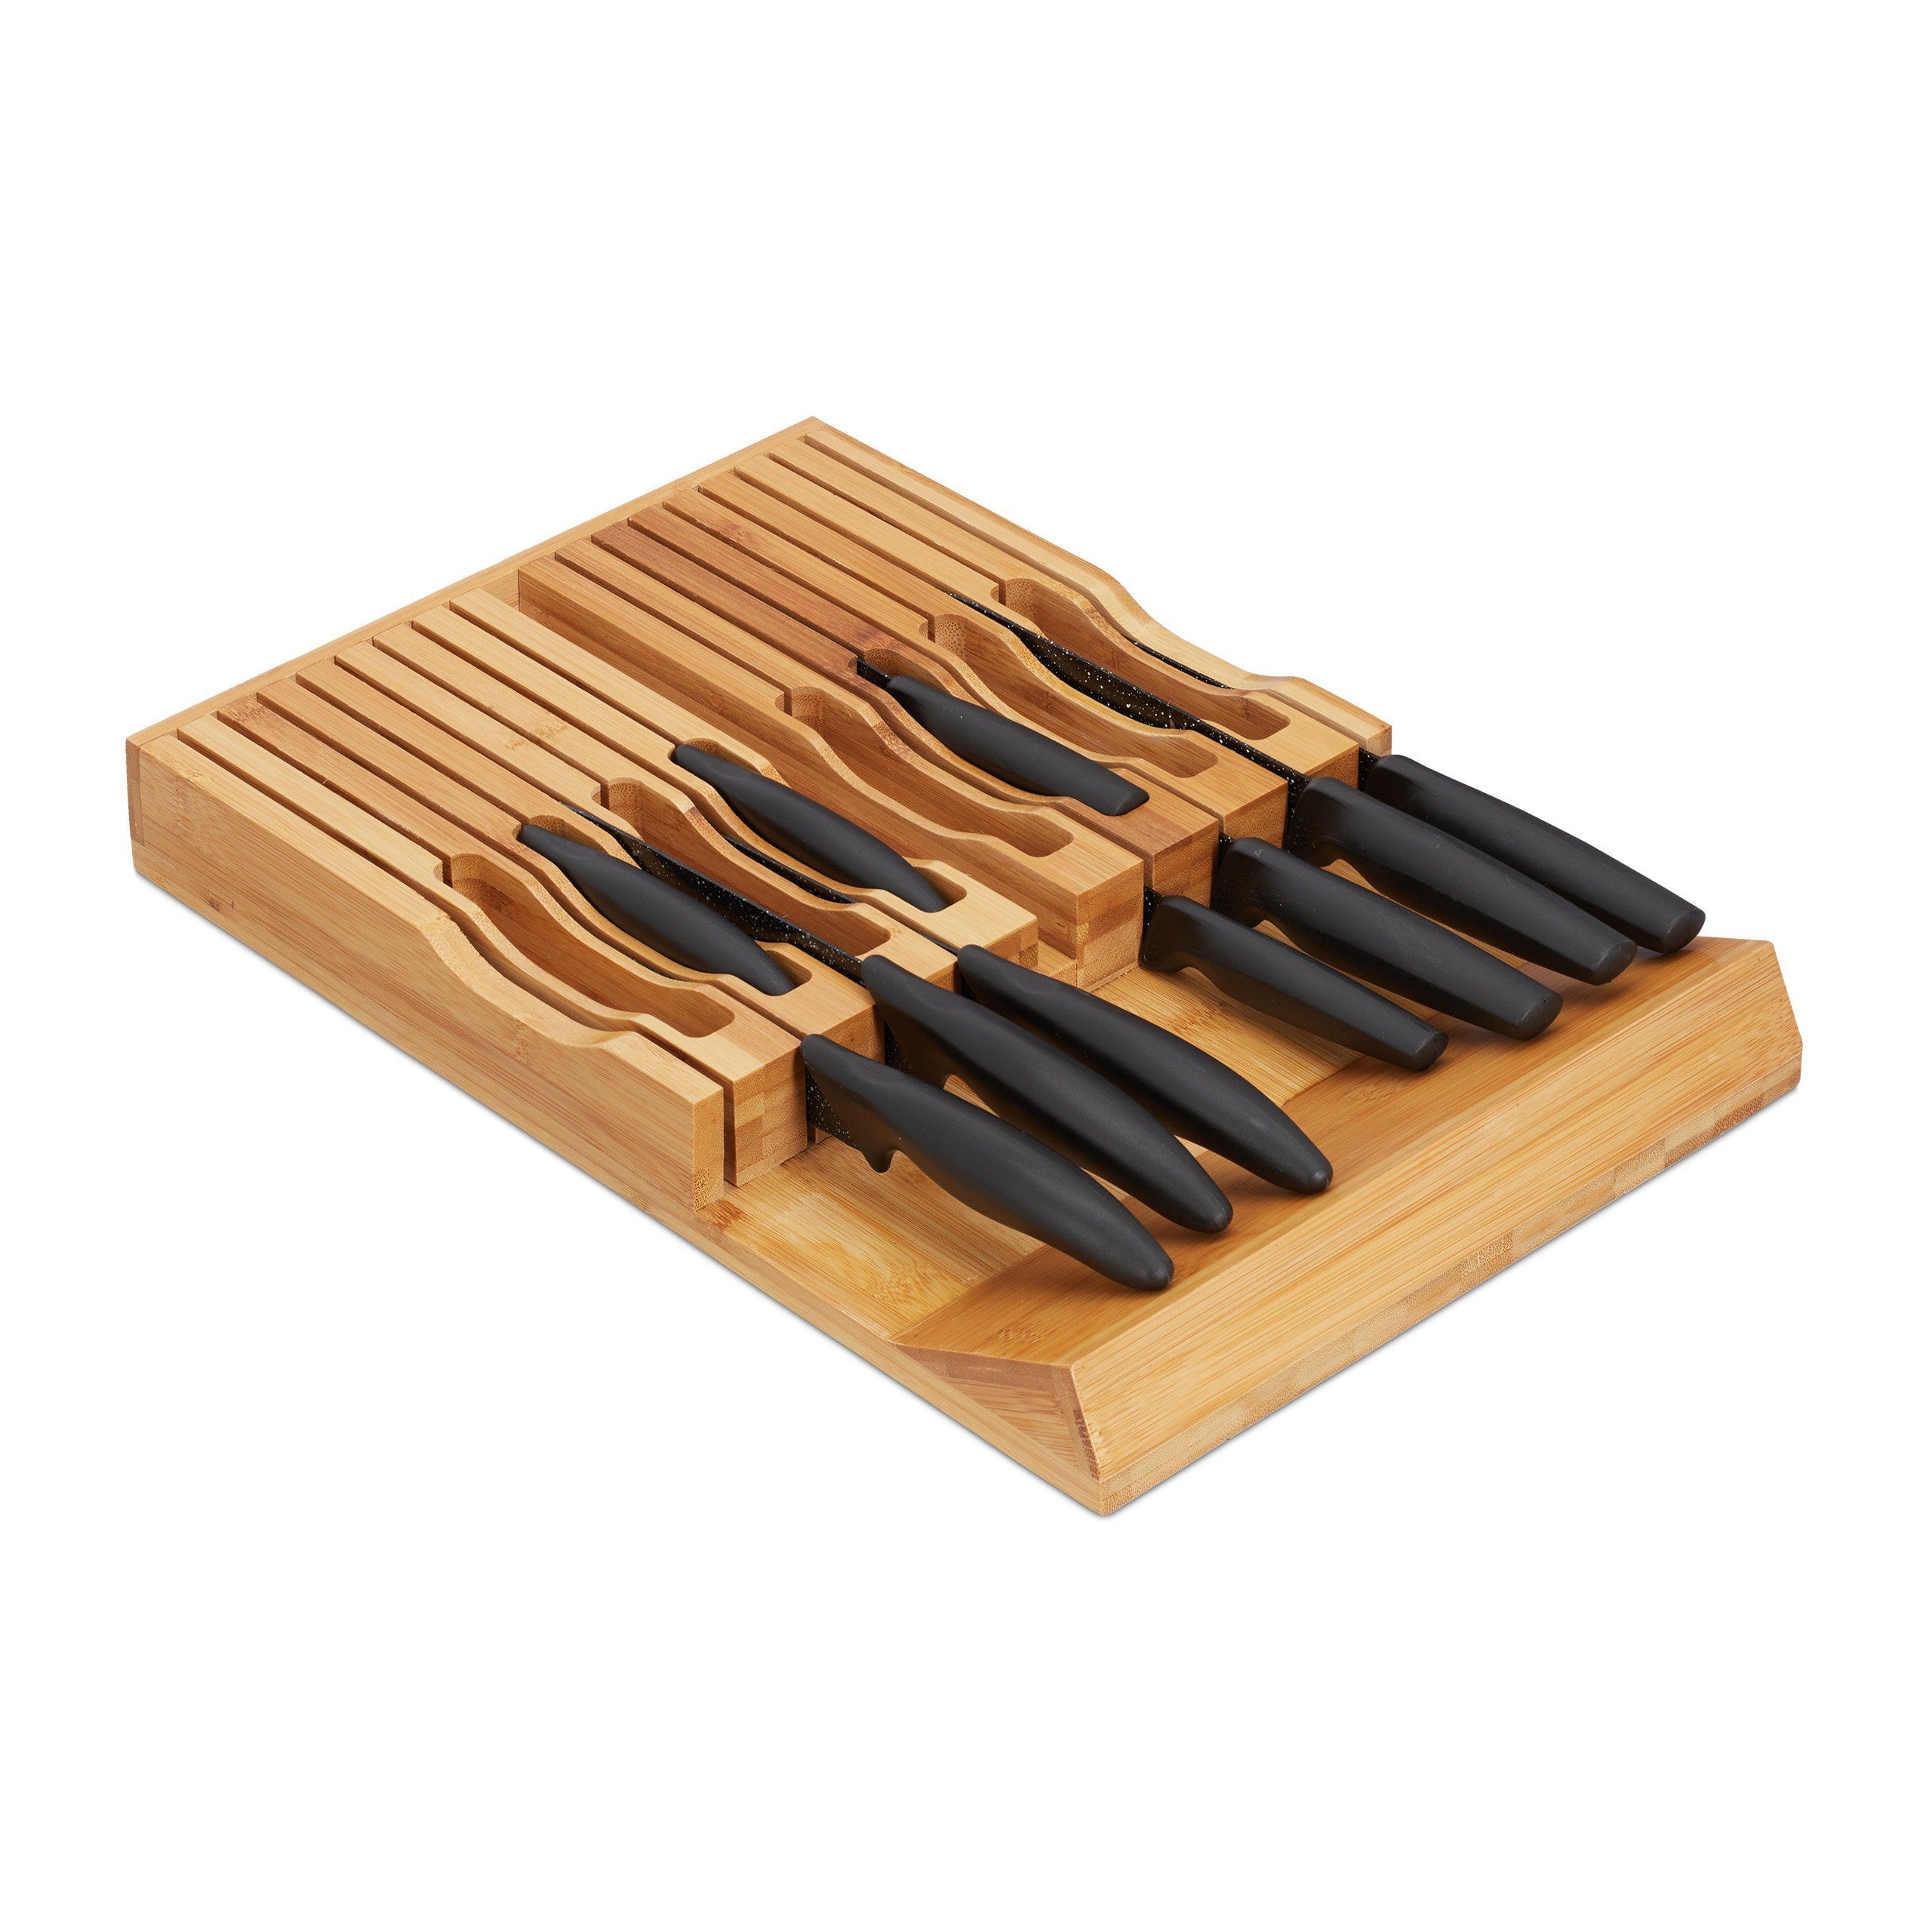 relaxdays Messerblock Messerorganizer Bambus 17 Messer für